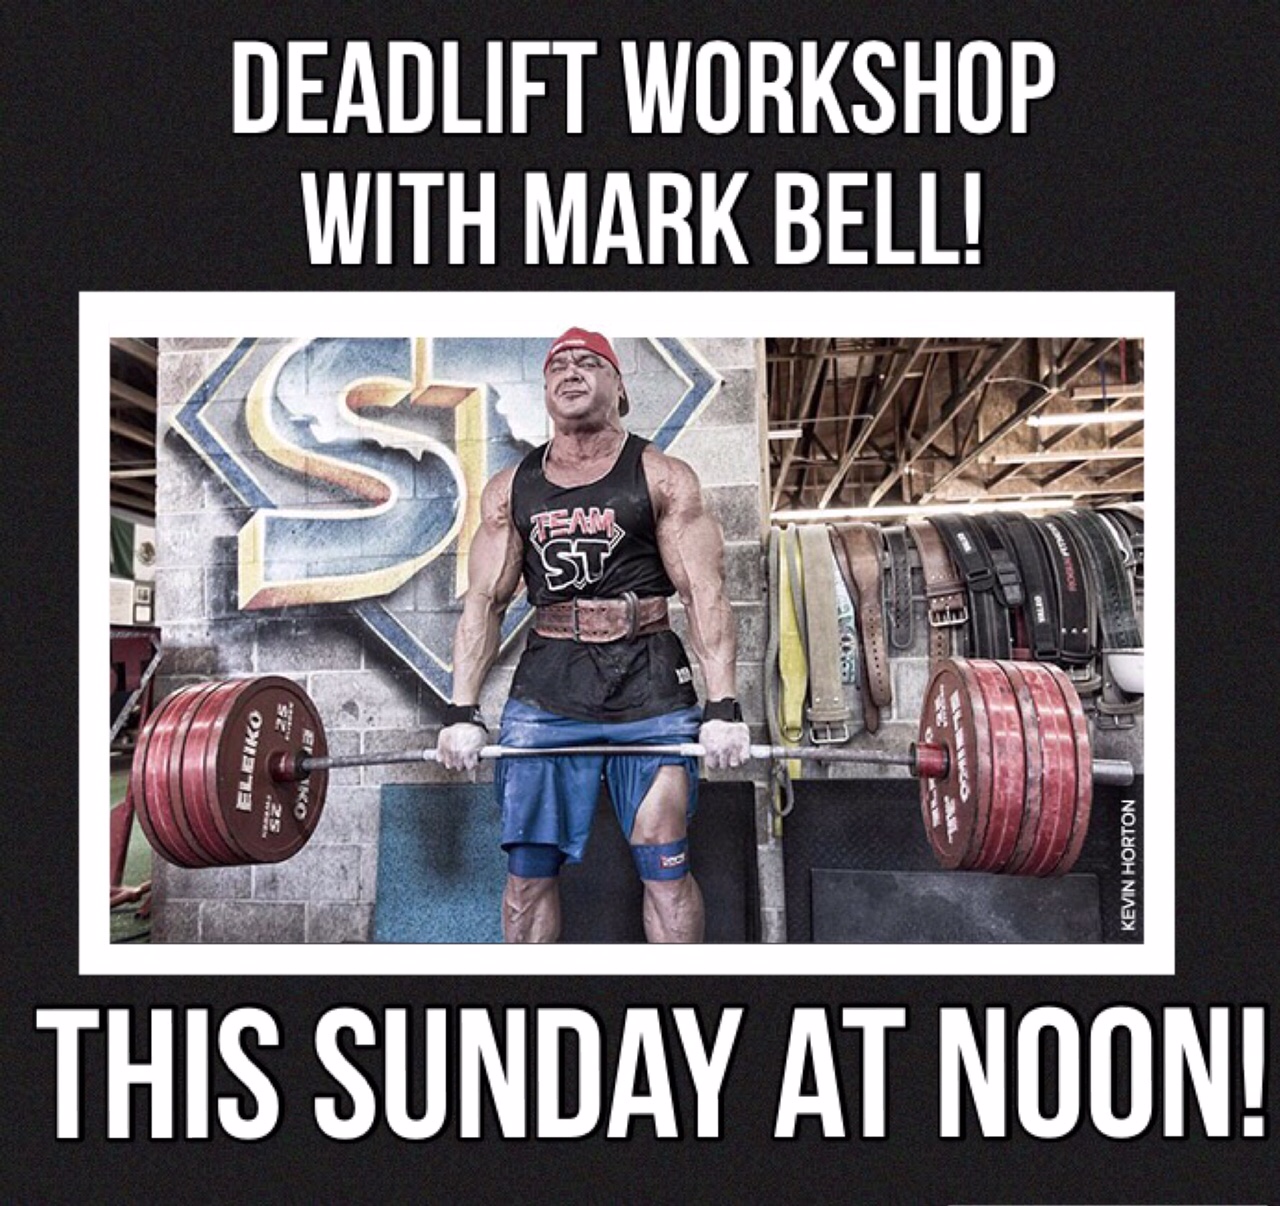 Mark Bell Deadlift Workship